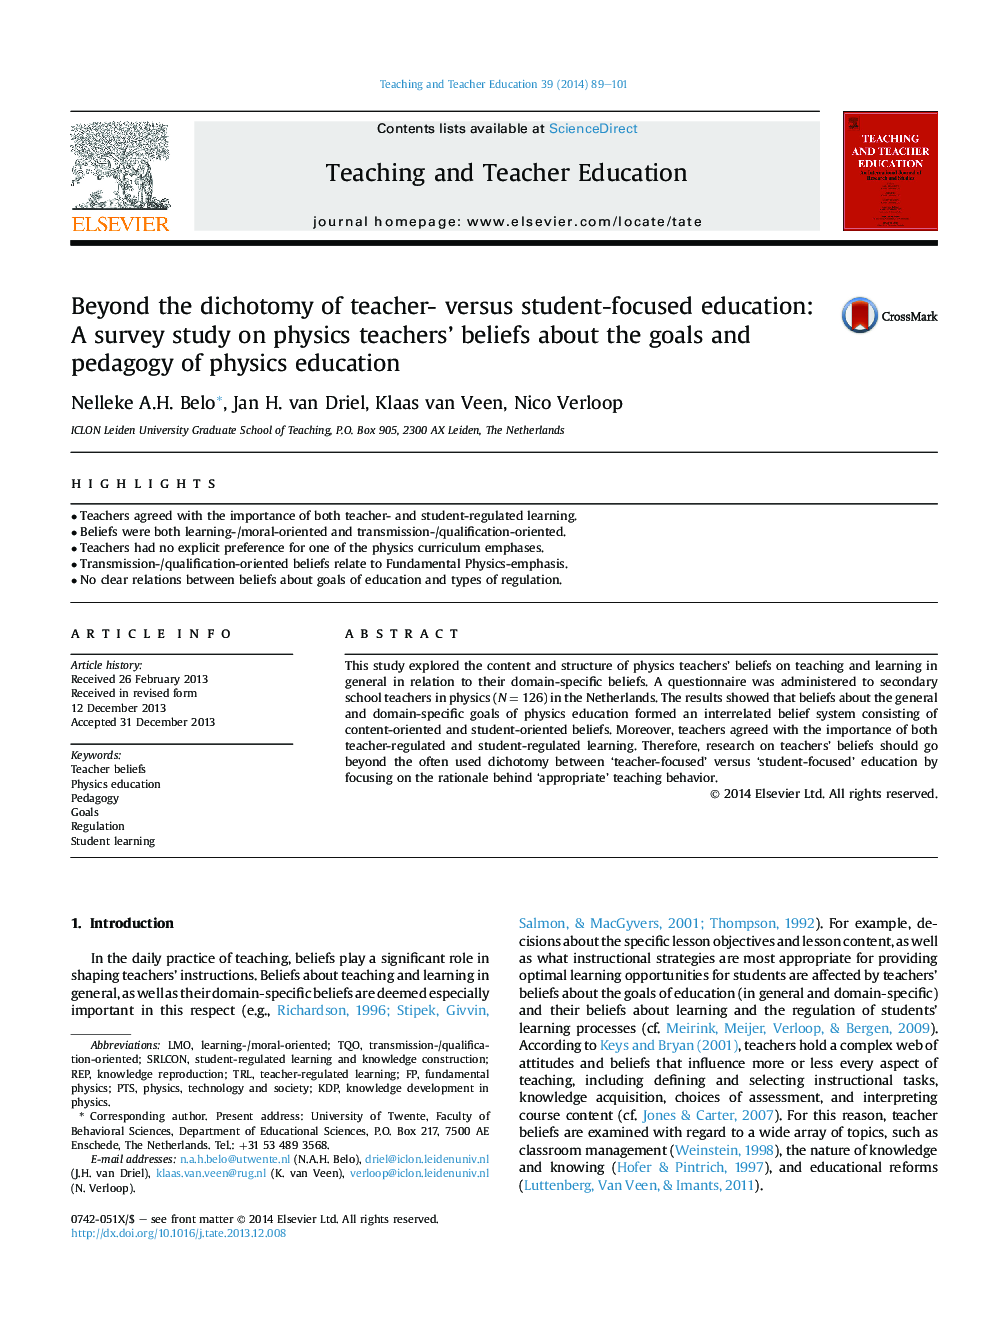 فراتر از دوگانگی تحصیلی معلم در مقابل تحصیل دانشجو: یک مطالعه توصیفی بر روی باورهای معلمان فیزیک درباره اهداف و آموزش و پرورش آموزش فیزیک 